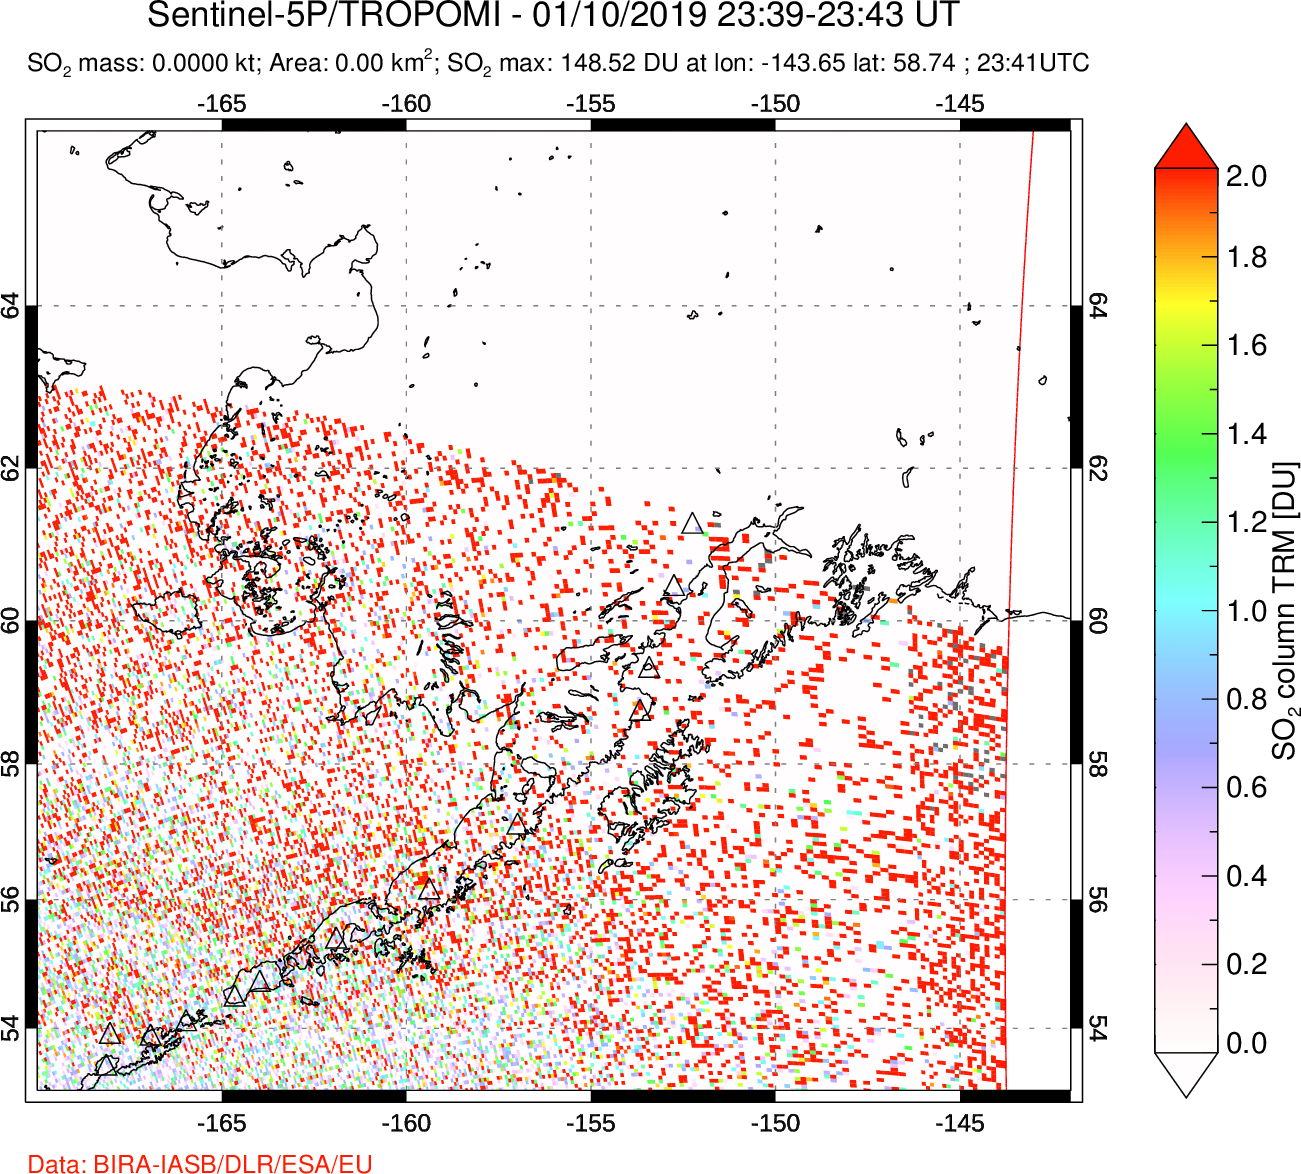 A sulfur dioxide image over Alaska, USA on Jan 10, 2019.